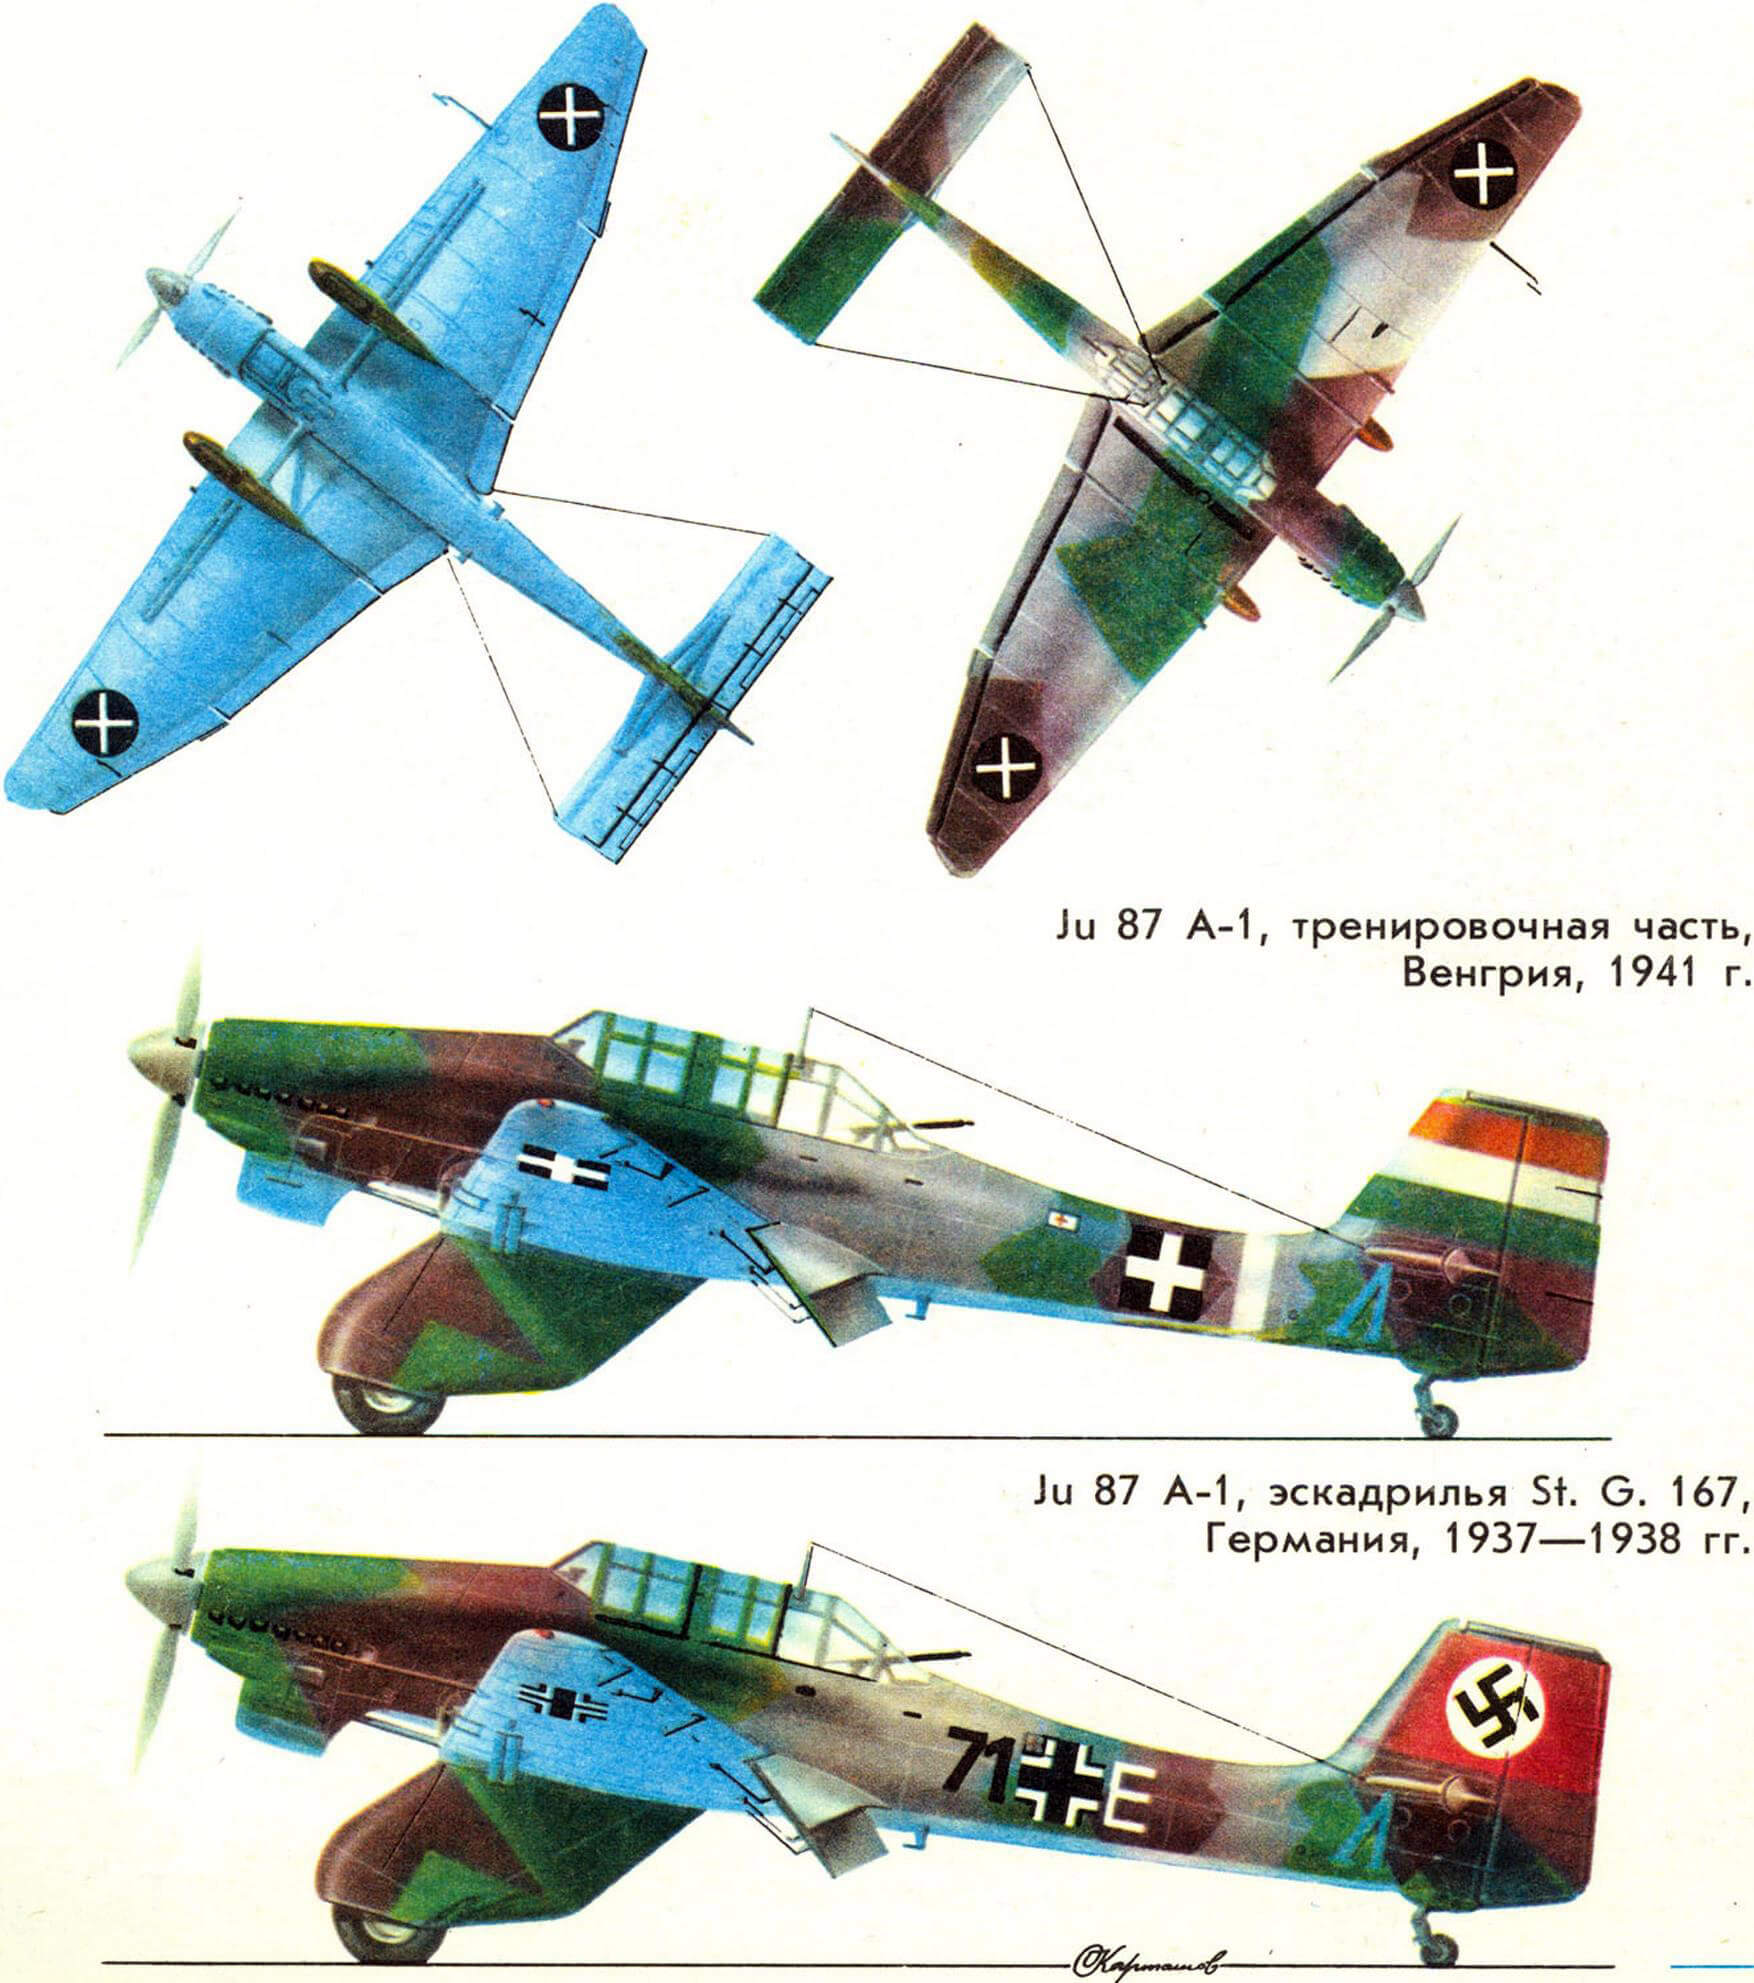 Ju 87 A-1, тренировочная часть, Венгрия, 1941 г. Ju 87 A-1, эскадрилья St. G. 167, Германия, 1937—1938 гг.